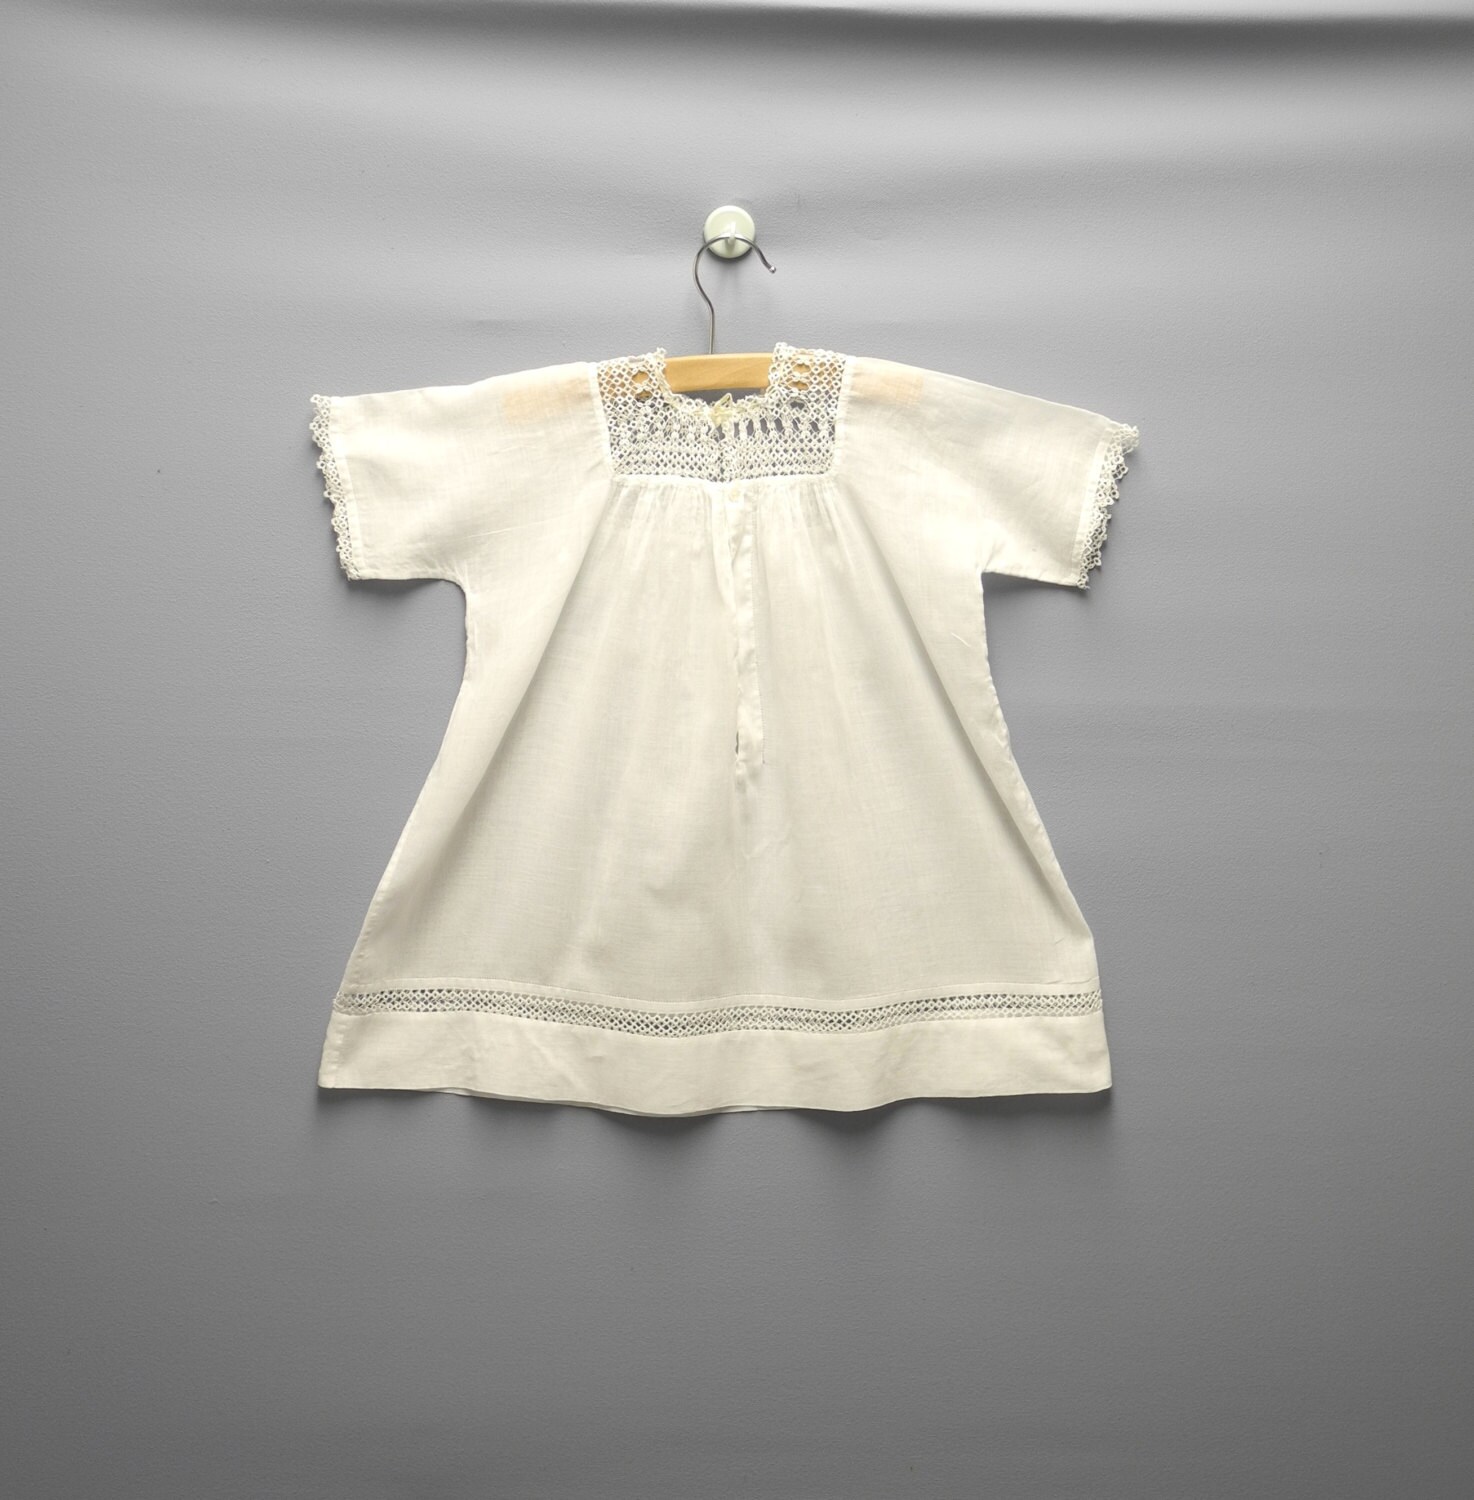 met de hand gemaakt schattige stof Vintage baby jurk Kleding Meisjeskleding Babykleding voor meisjes Jurken schoon maar niet perfect jaren 1930 tijdperk 